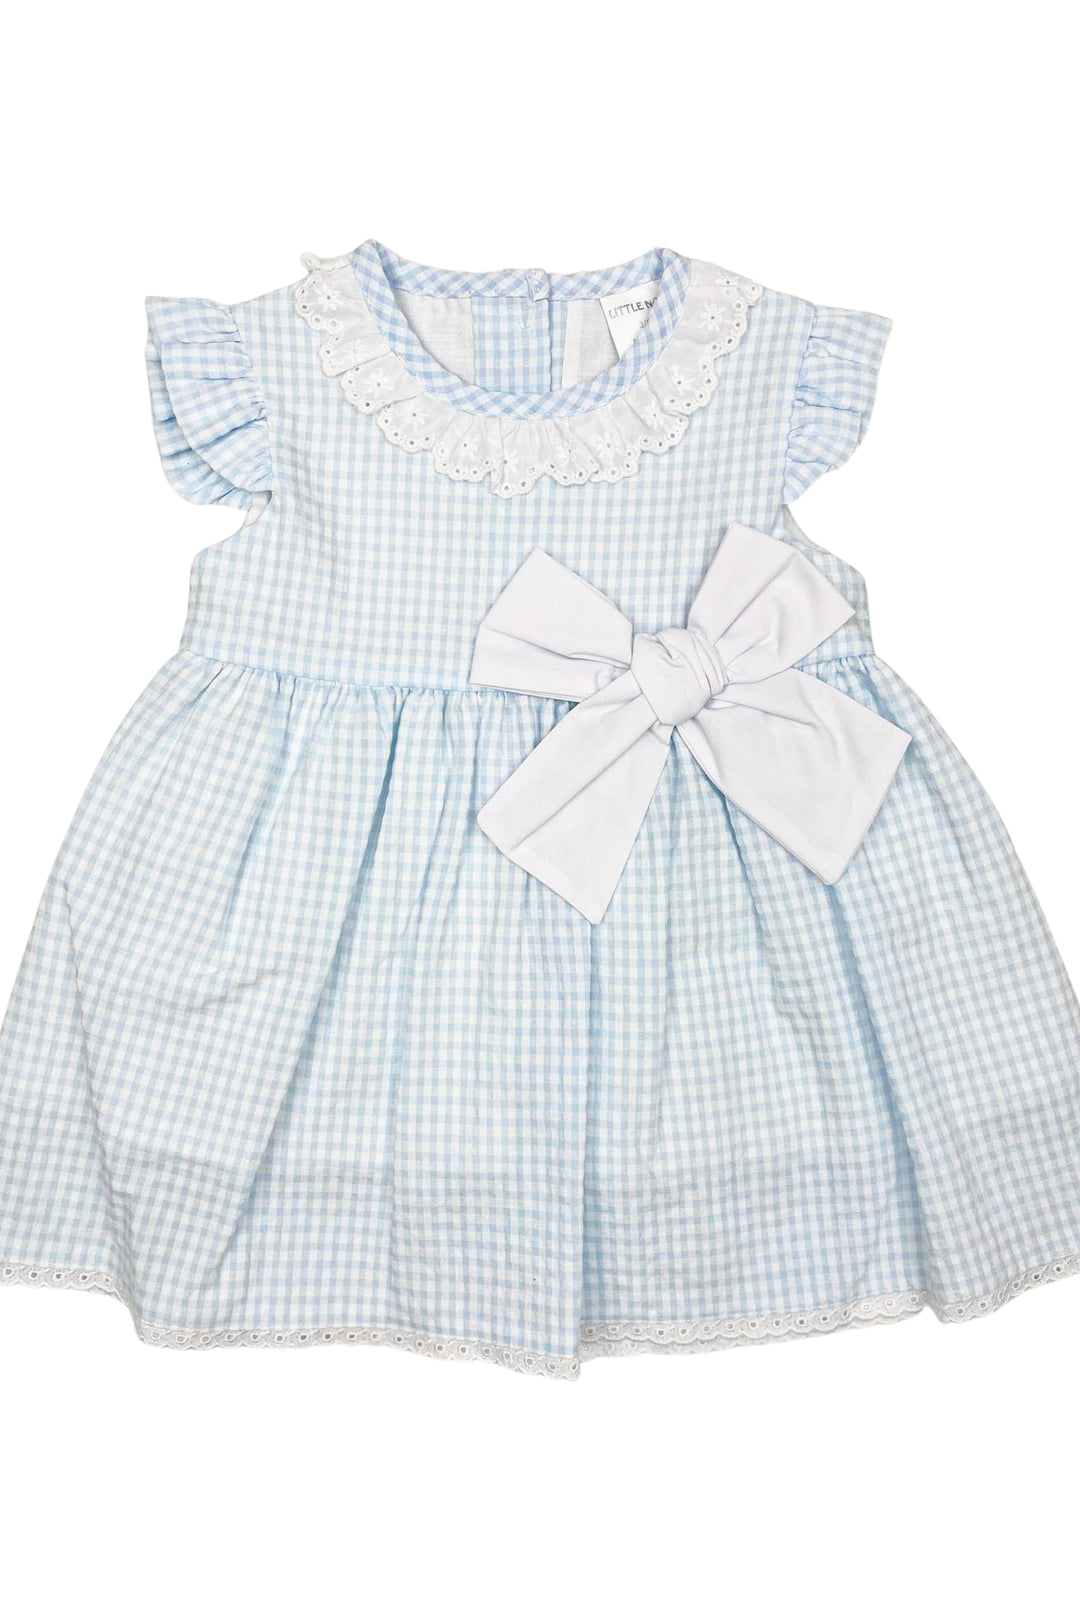 Little Nosh "Emily" Blue Gingham Dress | Millie and John